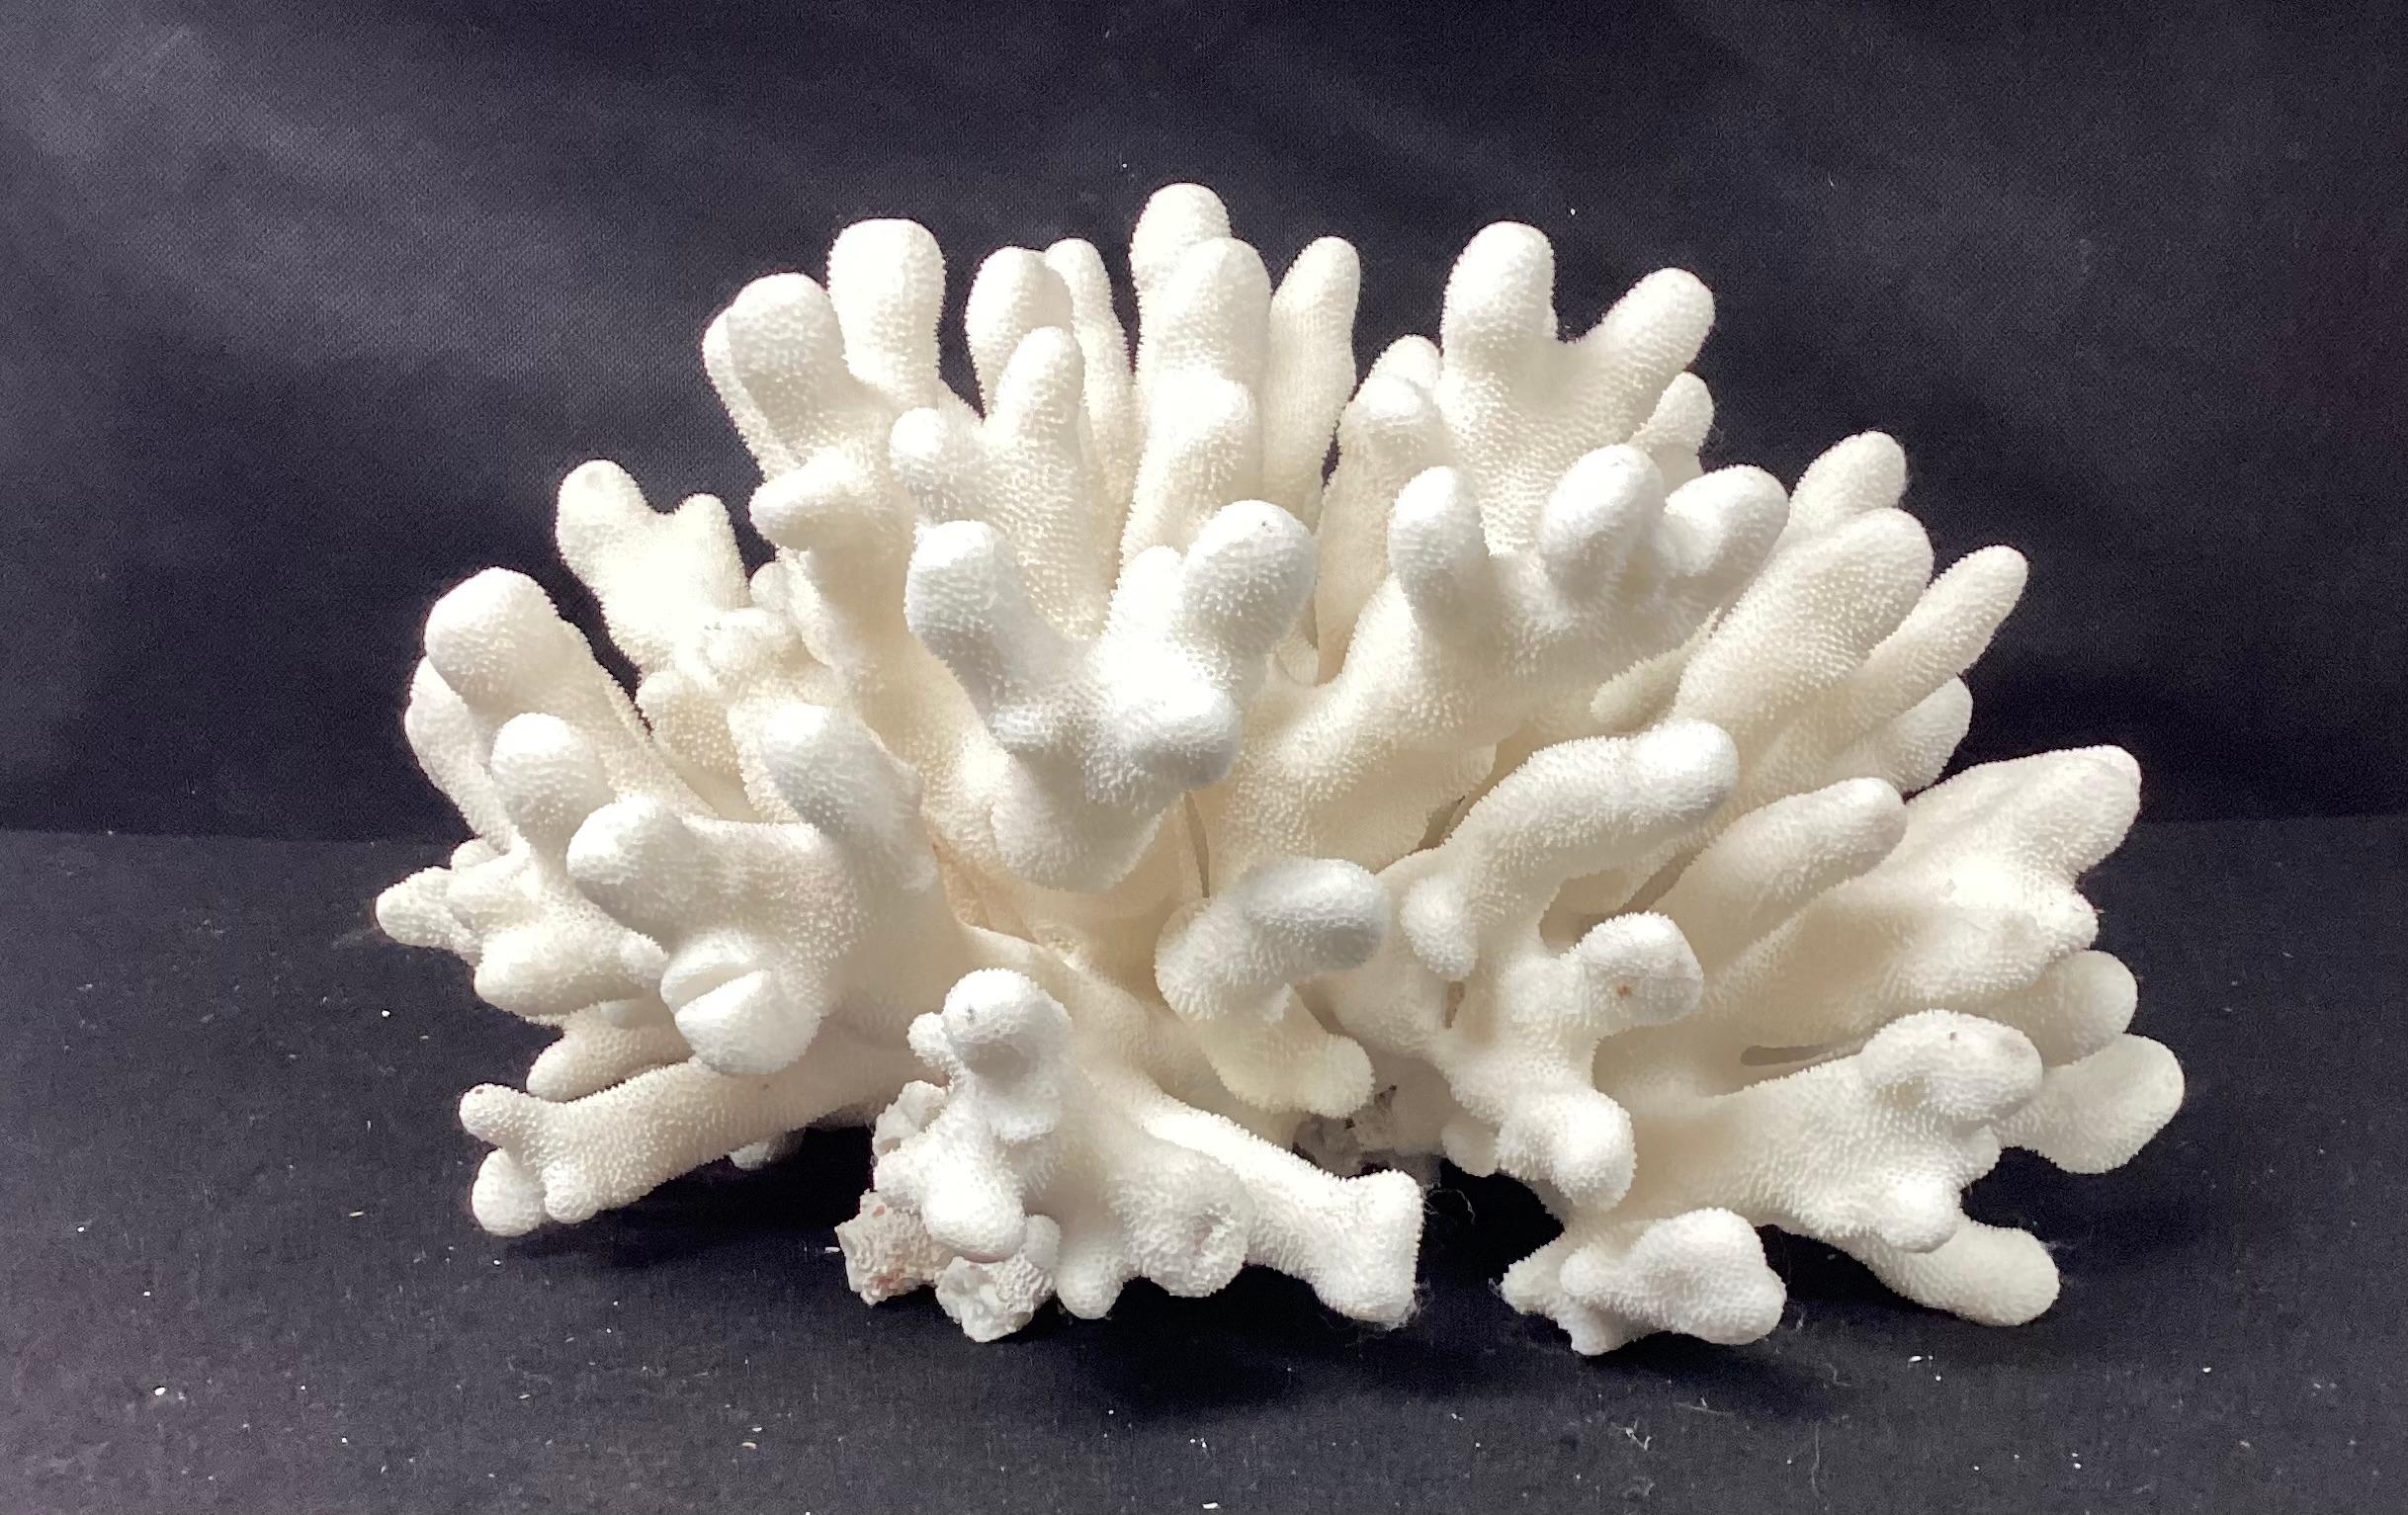 Ein seltenes Exemplar einer natürlichen weißen Elchhornkoralle. Die Farbe ist ein natürliches Weiß. Flache Unterseite zur einfachen Präsentation. Dieses Exemplar hat eine großartige Größe, um es in jeder Einrichtung zu präsentieren.